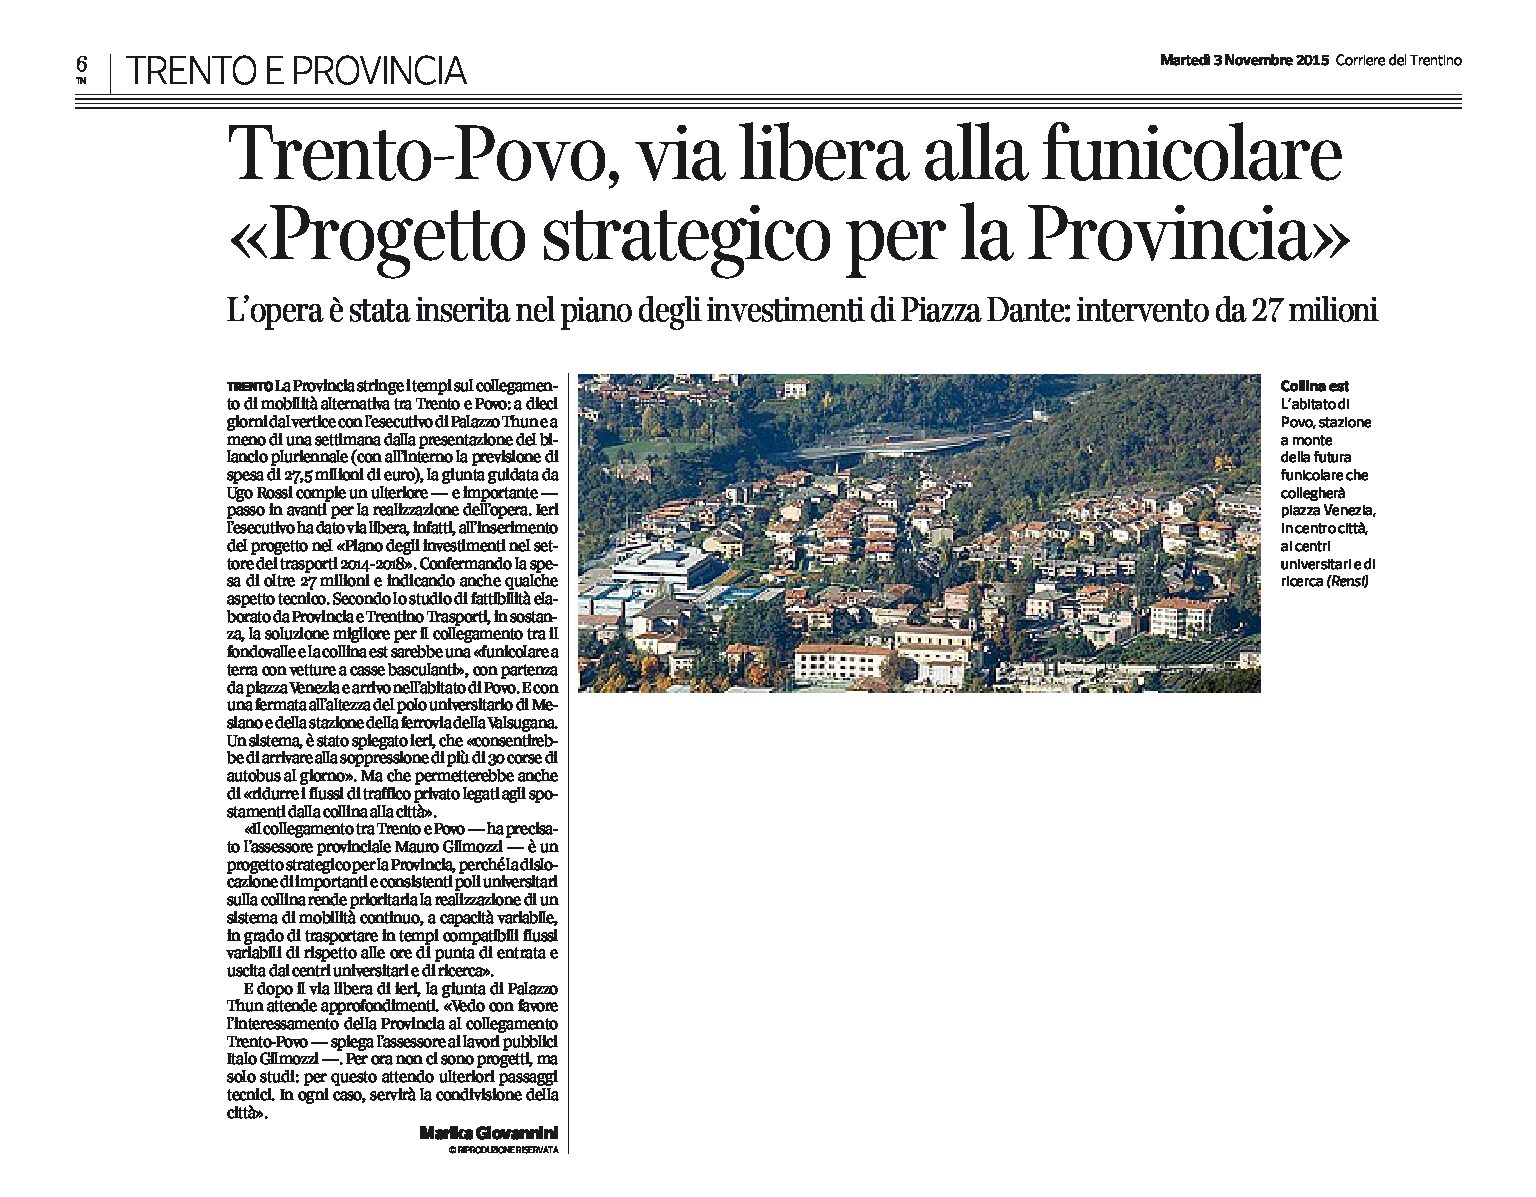 Trento-Povo: via libera alla funicolare, “progetto strategico per la Provincia”